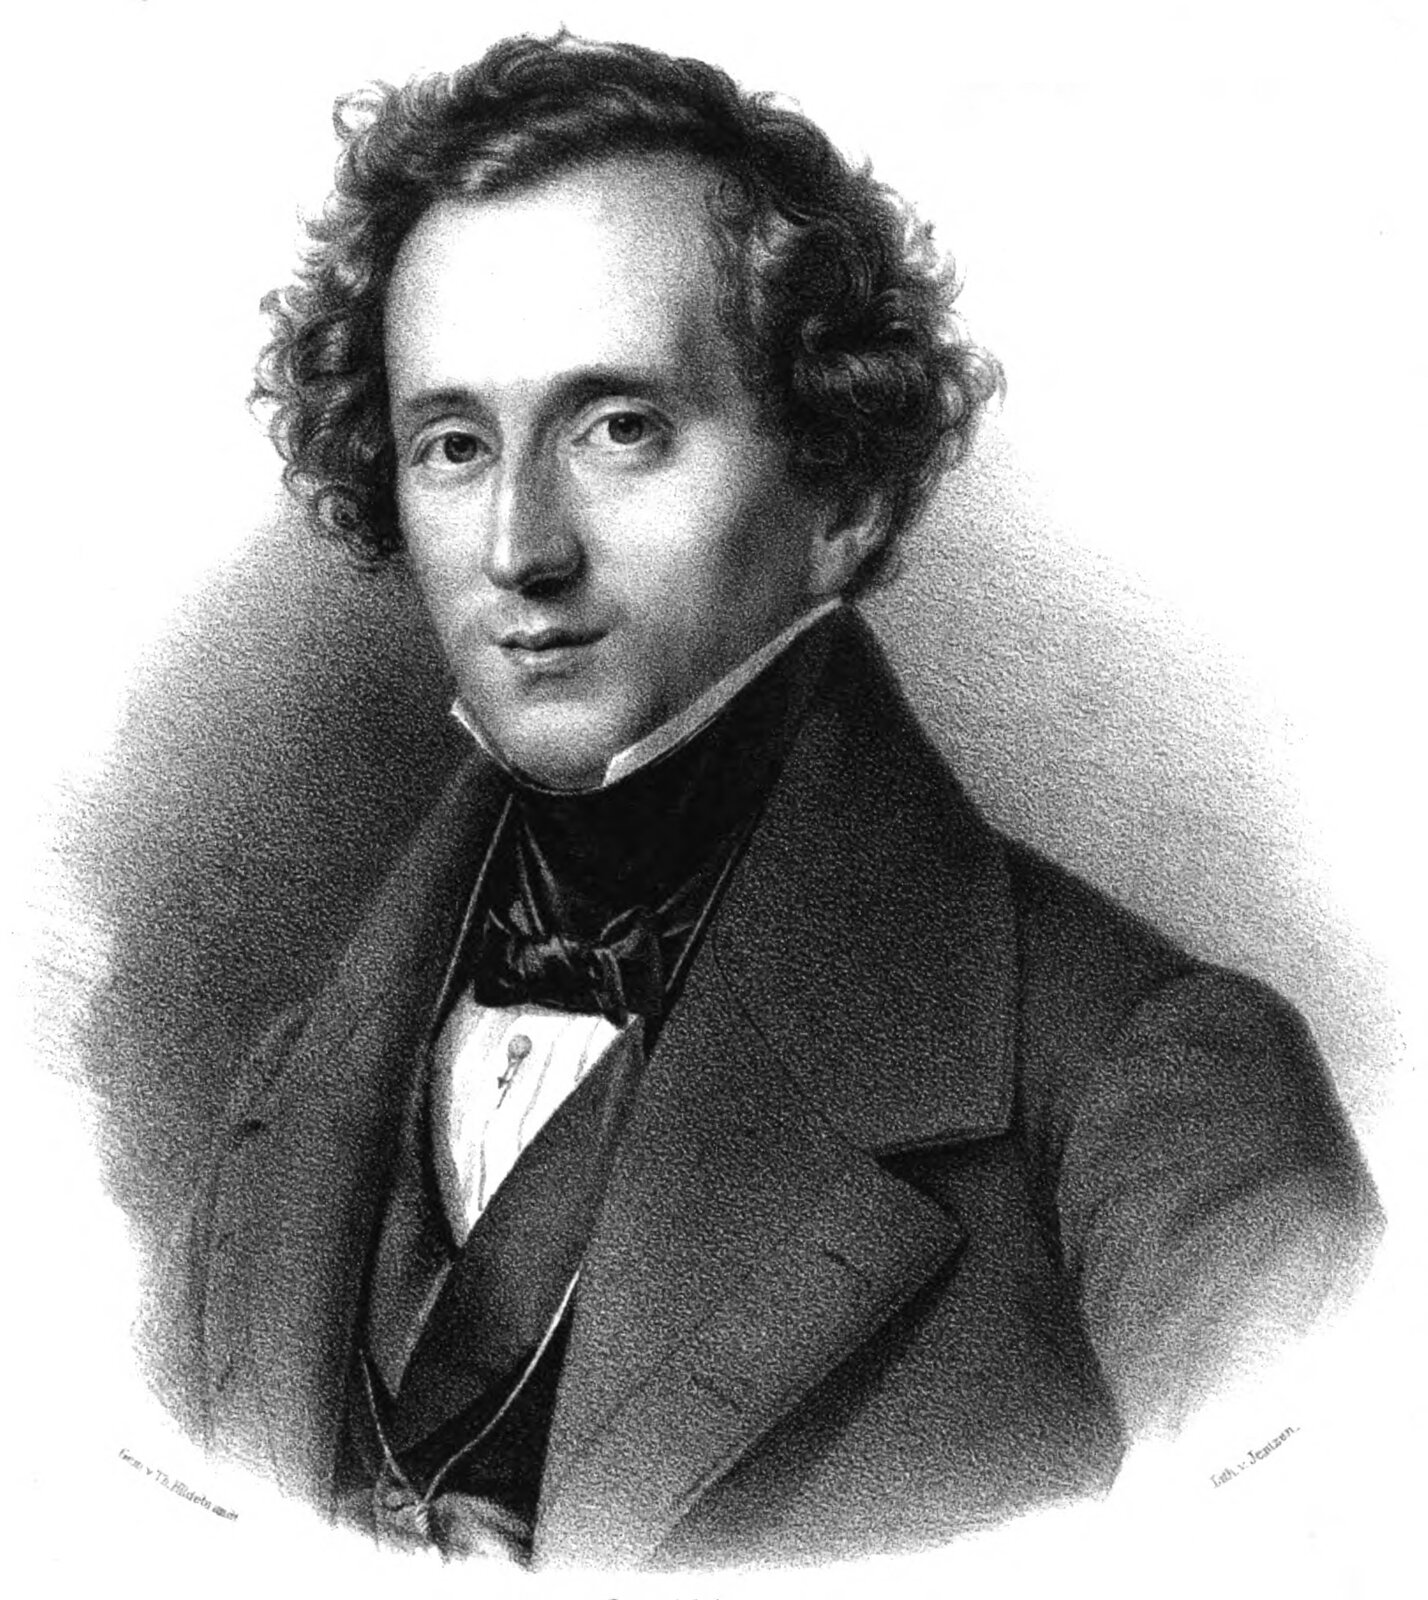 Ilustracja przedstawia litografię kompozytora Feliksa Mendelssohna Bartholdiego autorstwa Friedricha Jentzena. Mężczyzna na portrecie ma dłuższe włosy, lekko falowane. Ubrany jest w szary garnitur i białą koszulę. Delikatnie uśmiecha się.